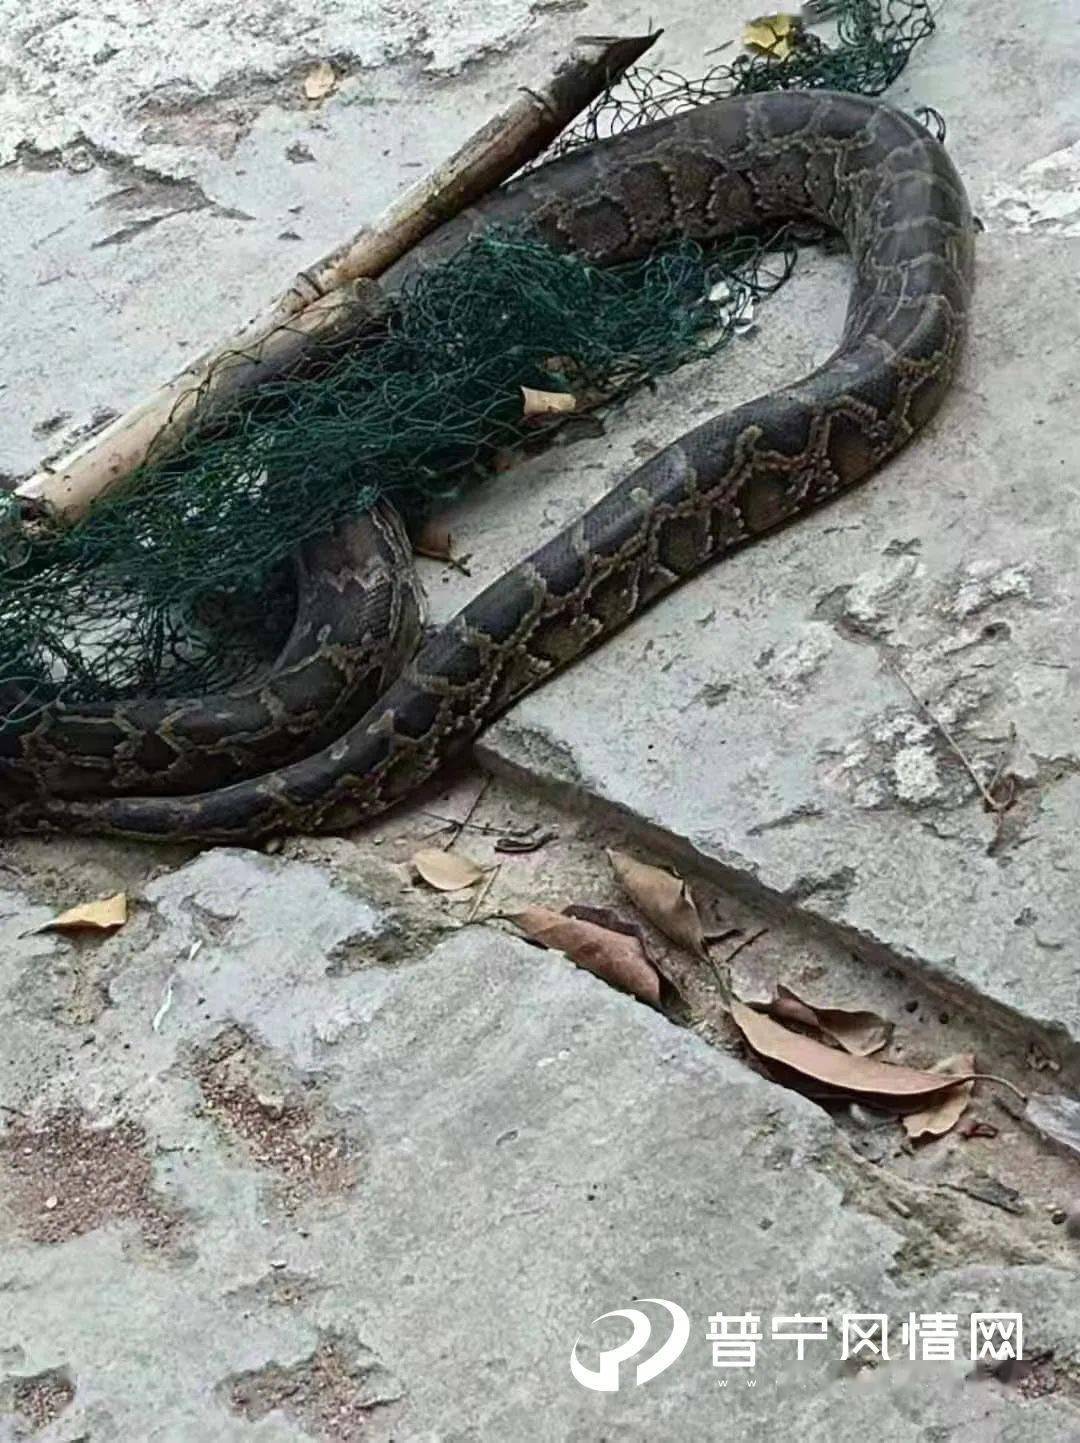 吓人!普宁山区惊现一条数米长大蟒蛇